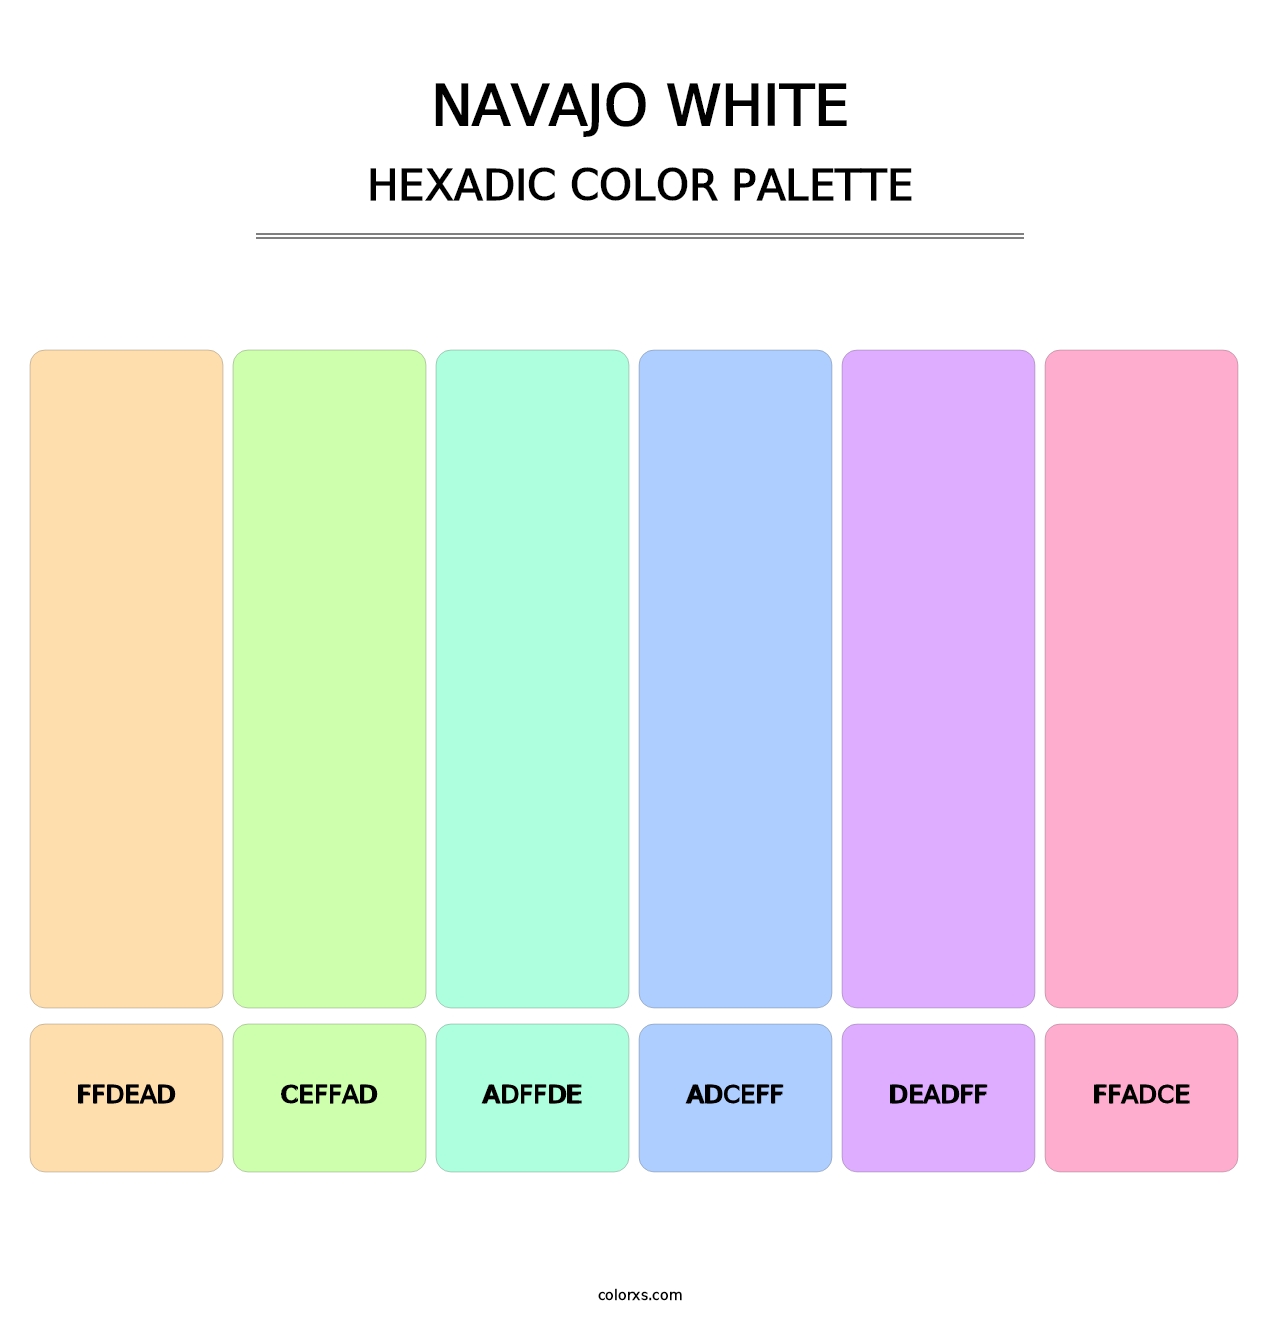 Navajo White - Hexadic Color Palette